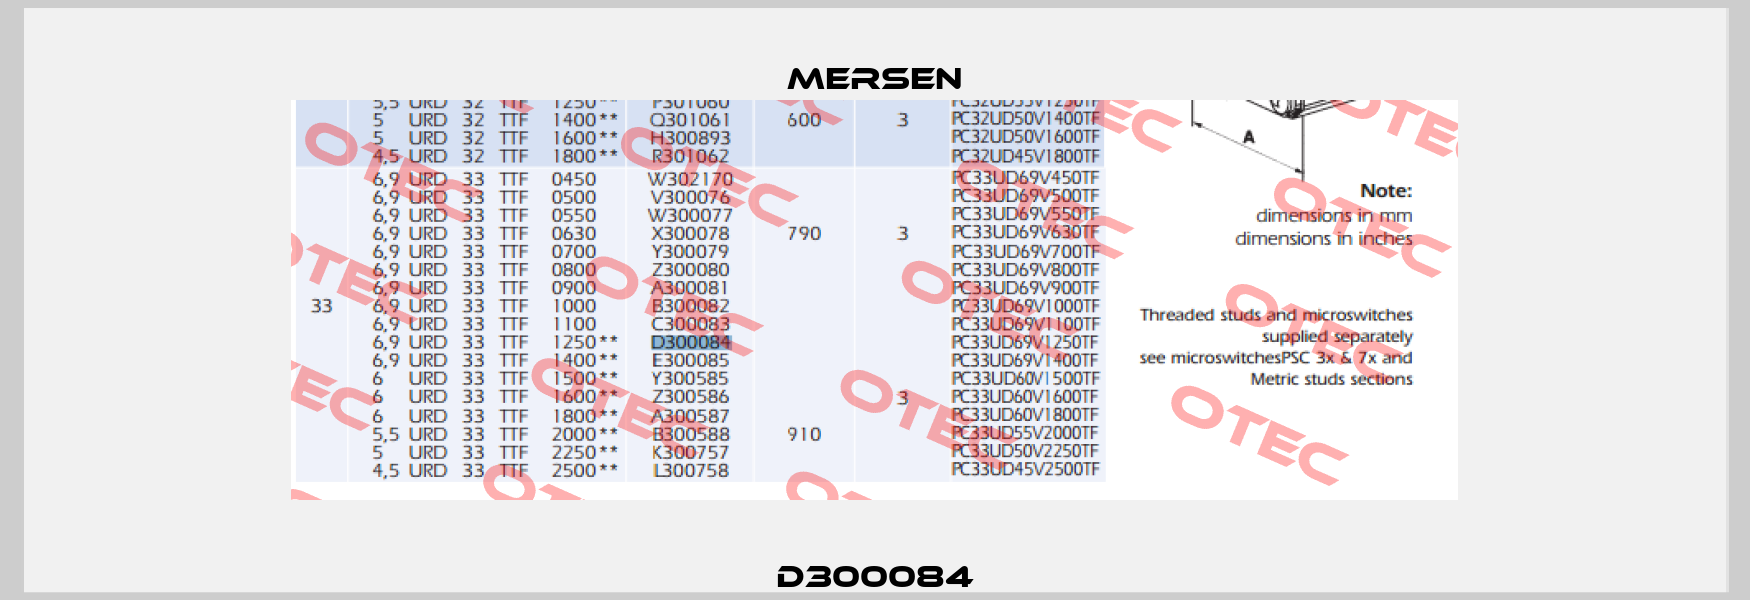 D300084 Mersen